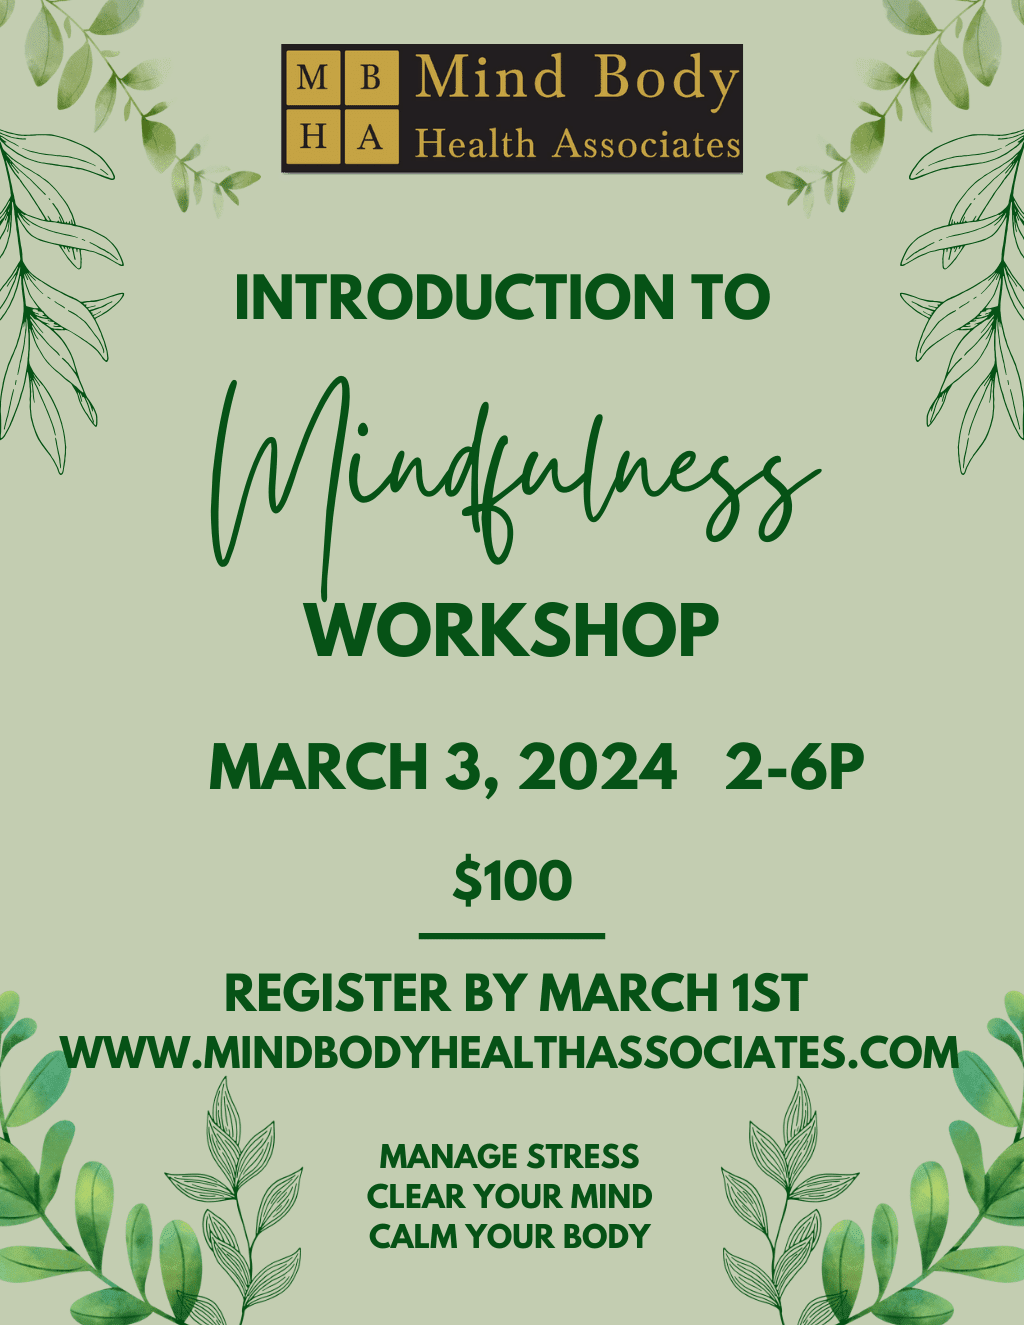 Mindfulness workshop flyer